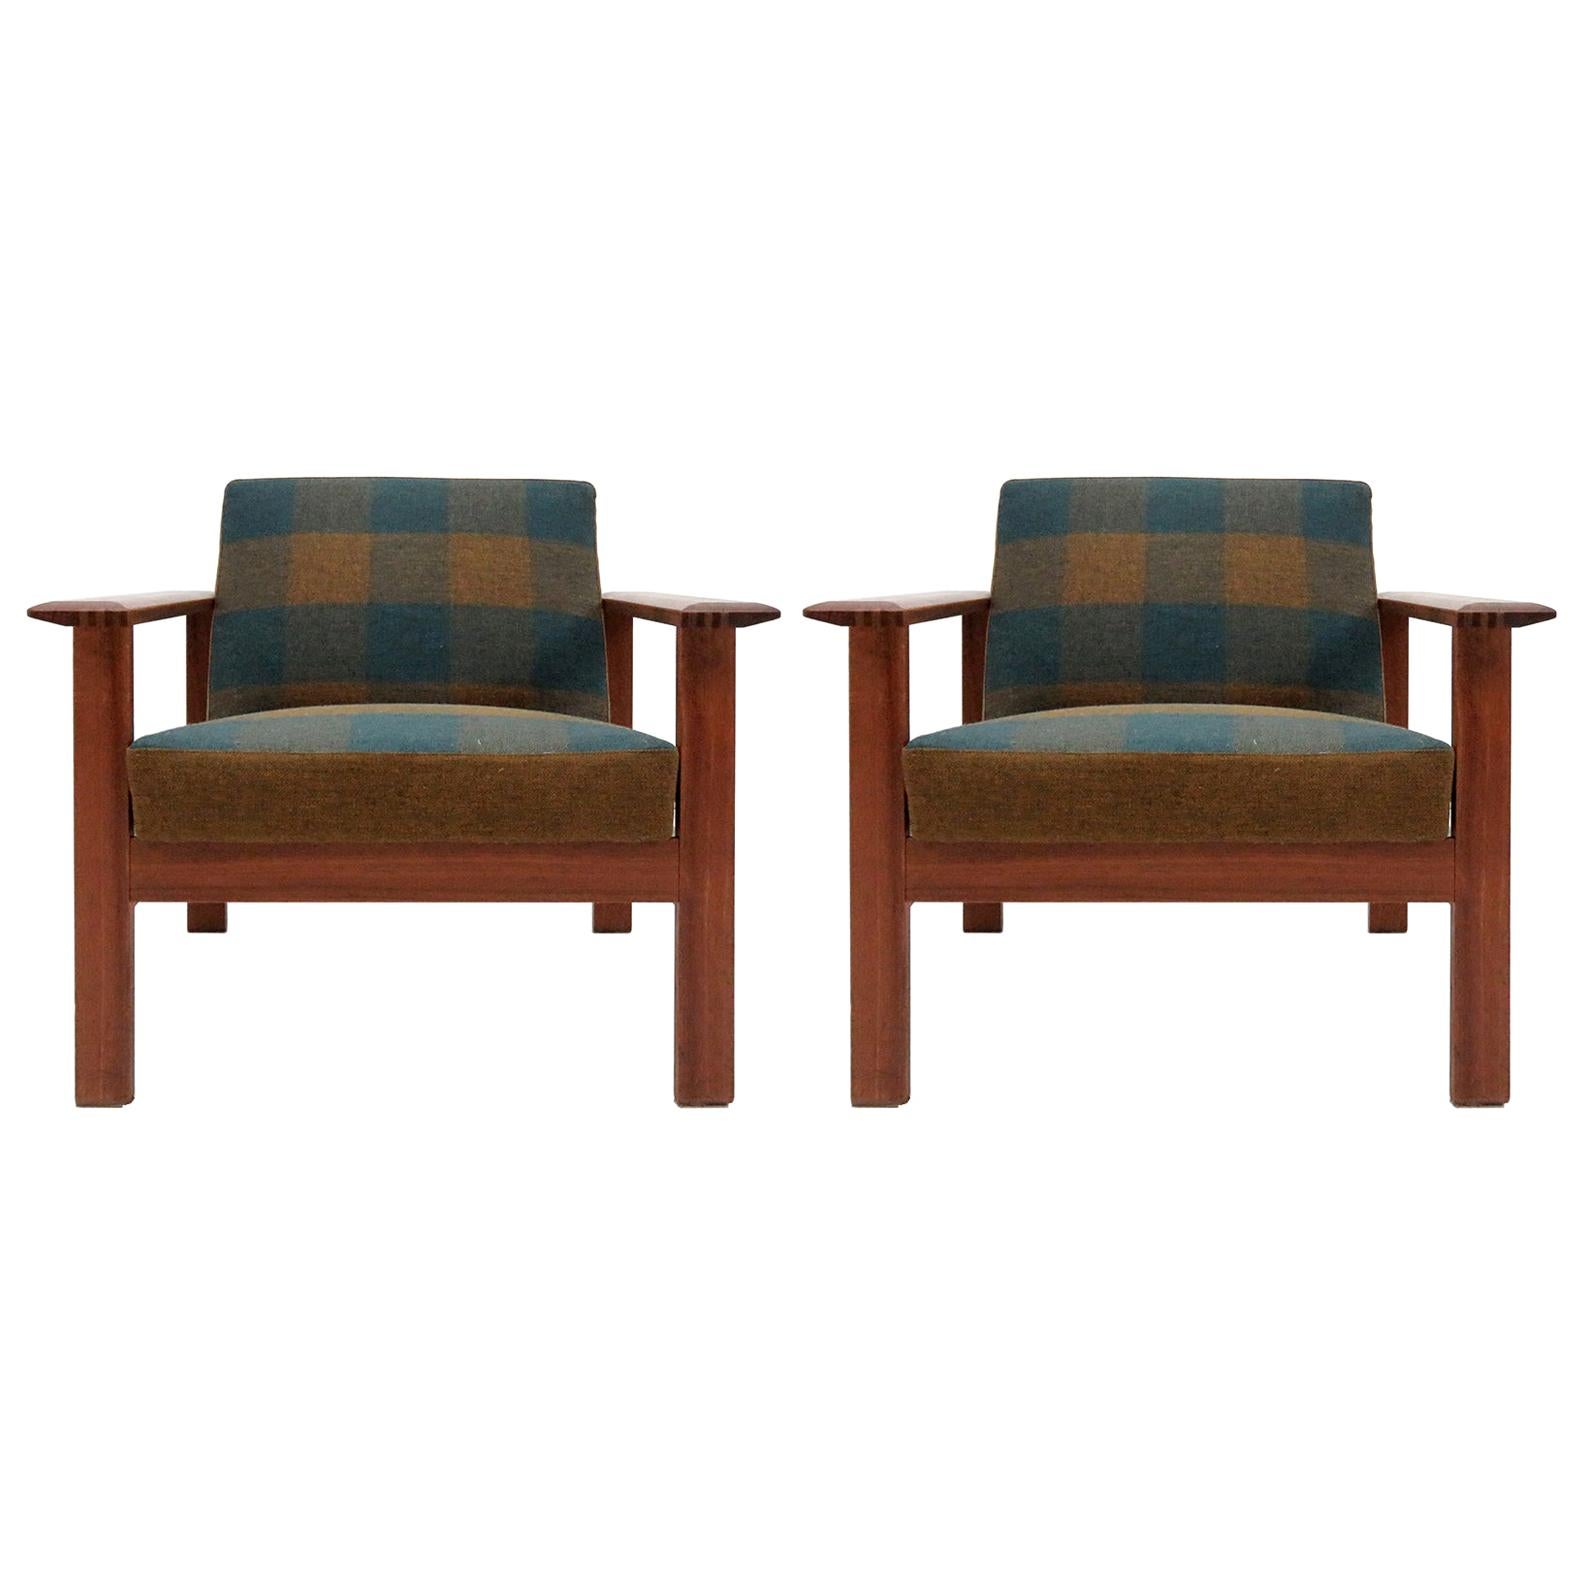 Gerhard Berg "Kubus" Lounge Chairs, 1960